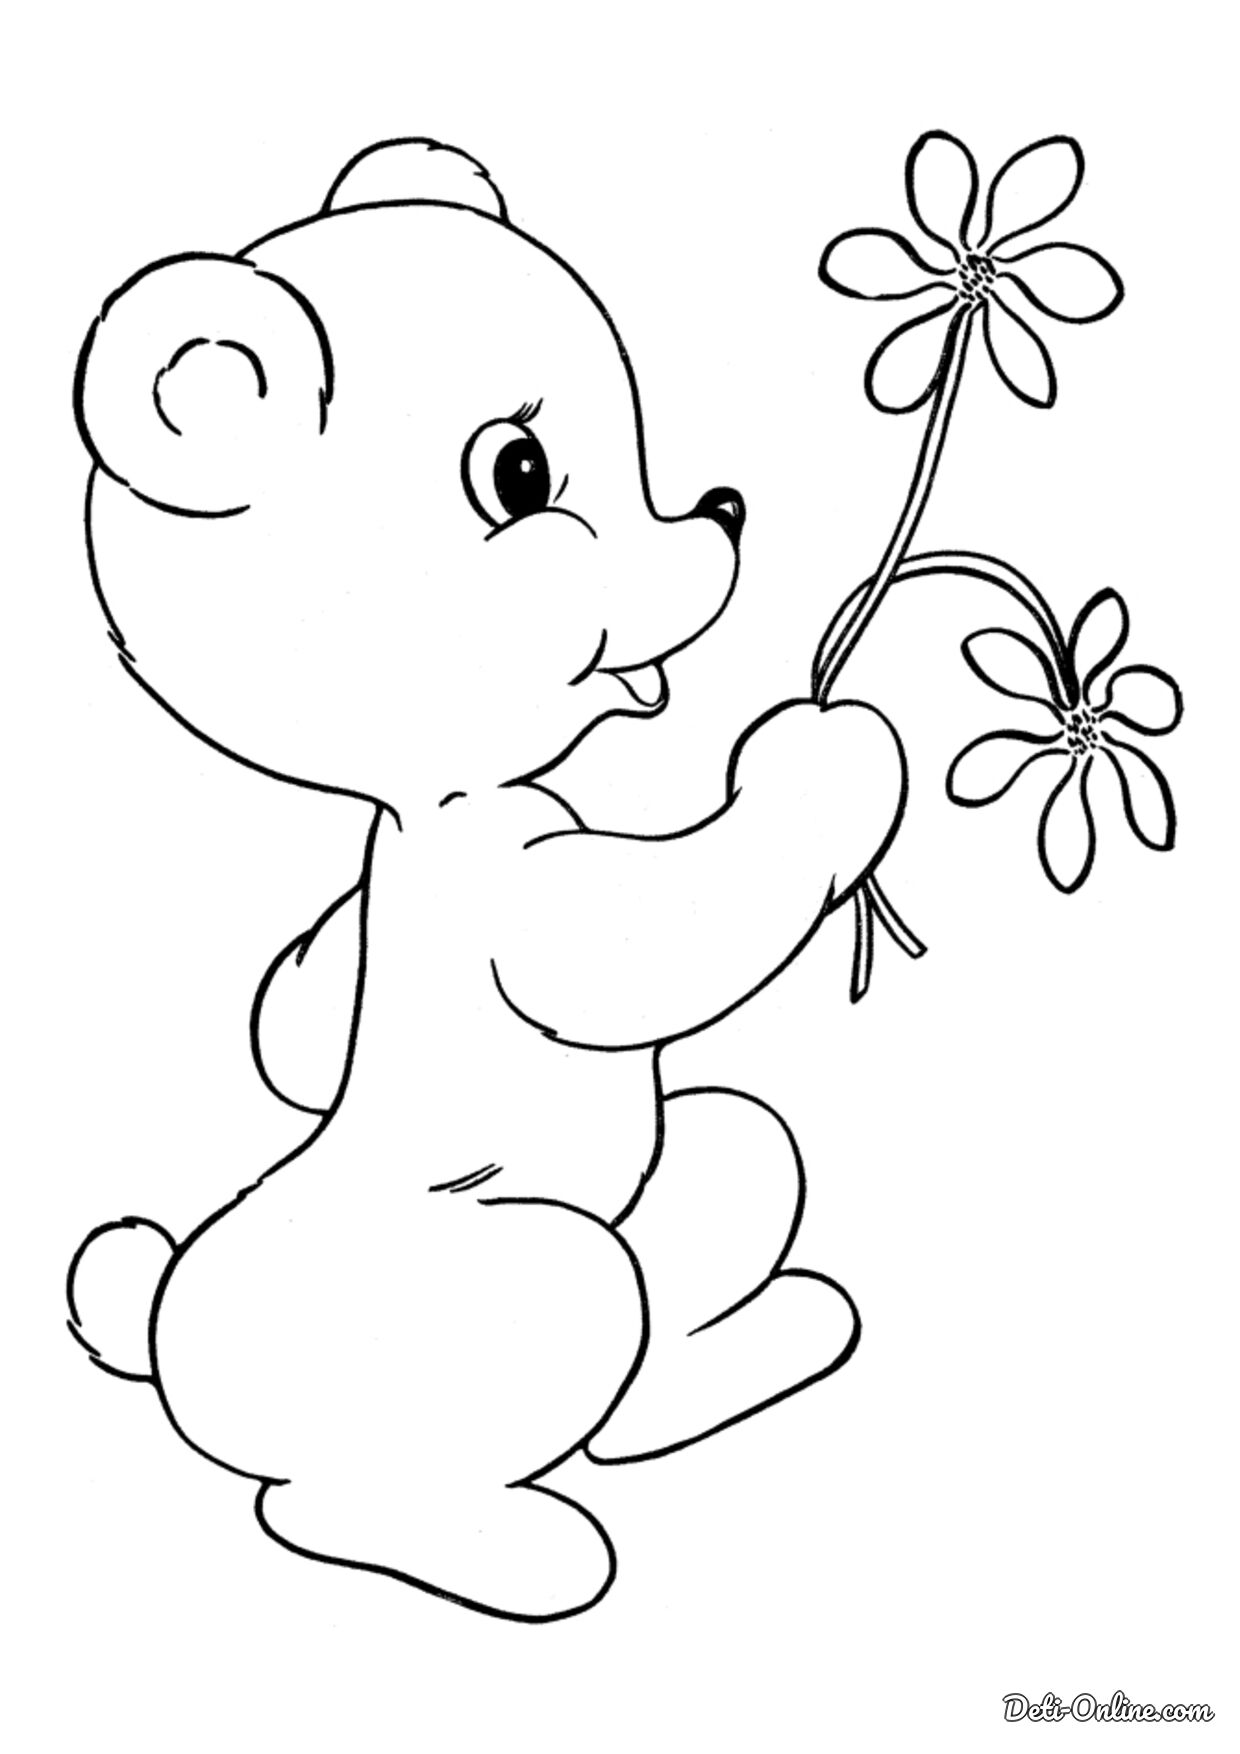 Картинки раскраски. Раскраска. Медвежонок. Раскраска "мишки". Медвежонок раскраска для детей. Мишка раскраска для малышей.